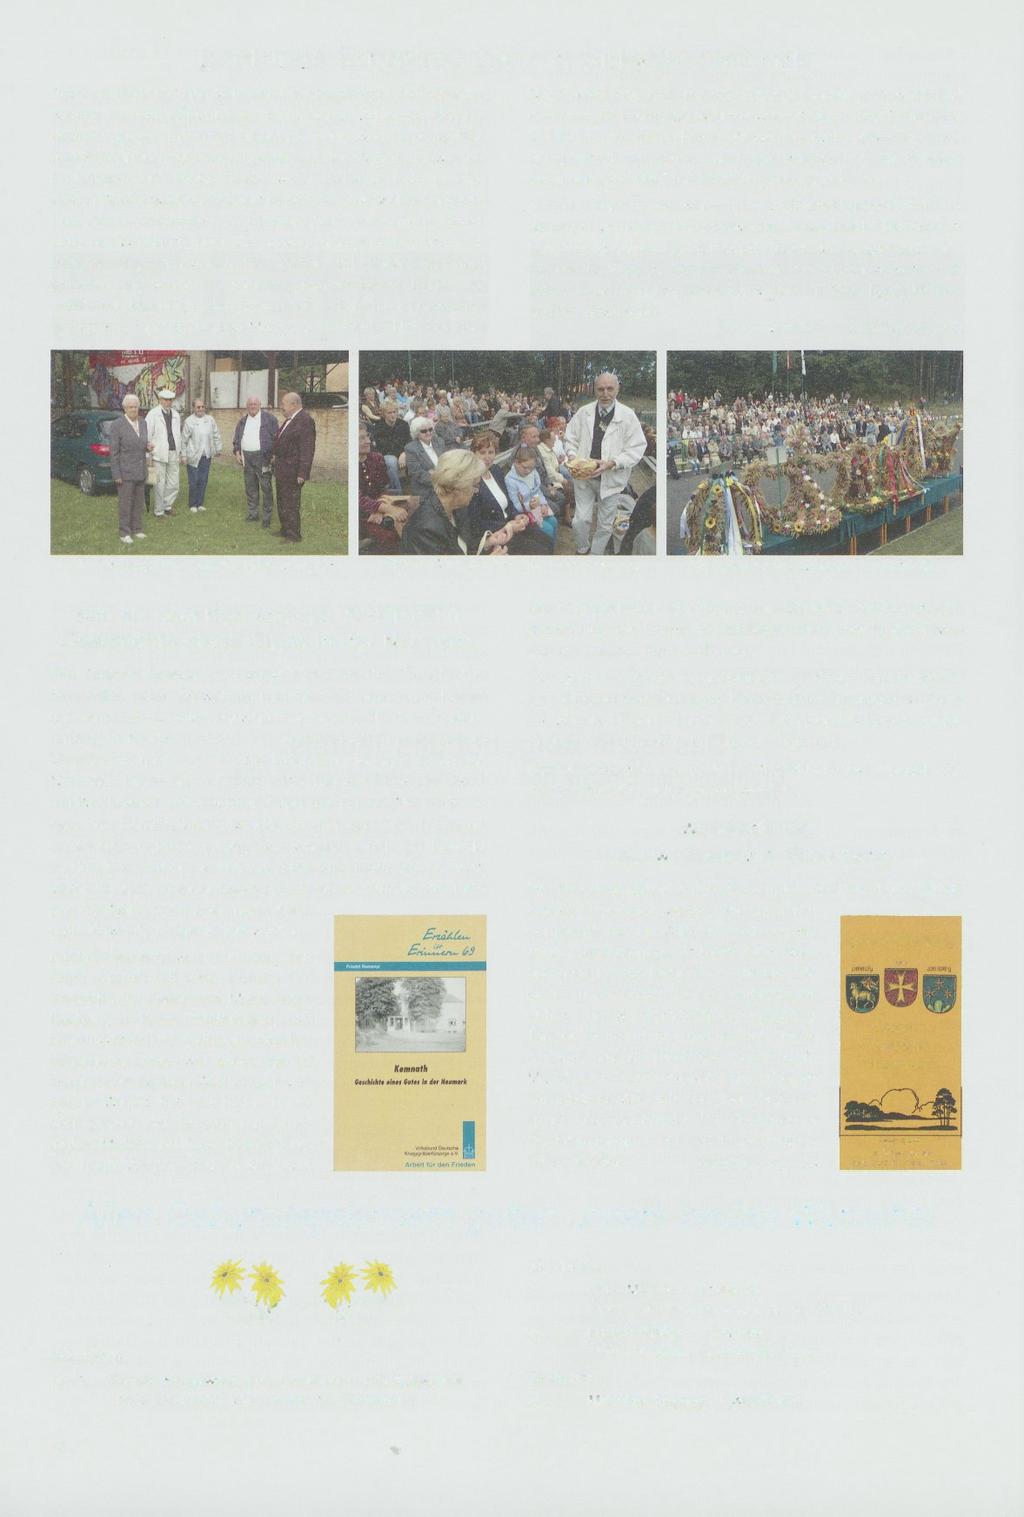 Zentrales Erntefest 2007 in Sul^cin/Zielenzig Auch in diesem Jahr war der Oststernberger Heimatkreis wieder zu dem alljährlichen im früheren Zielenzig stattfindenden großen Erntefest eingeladen und